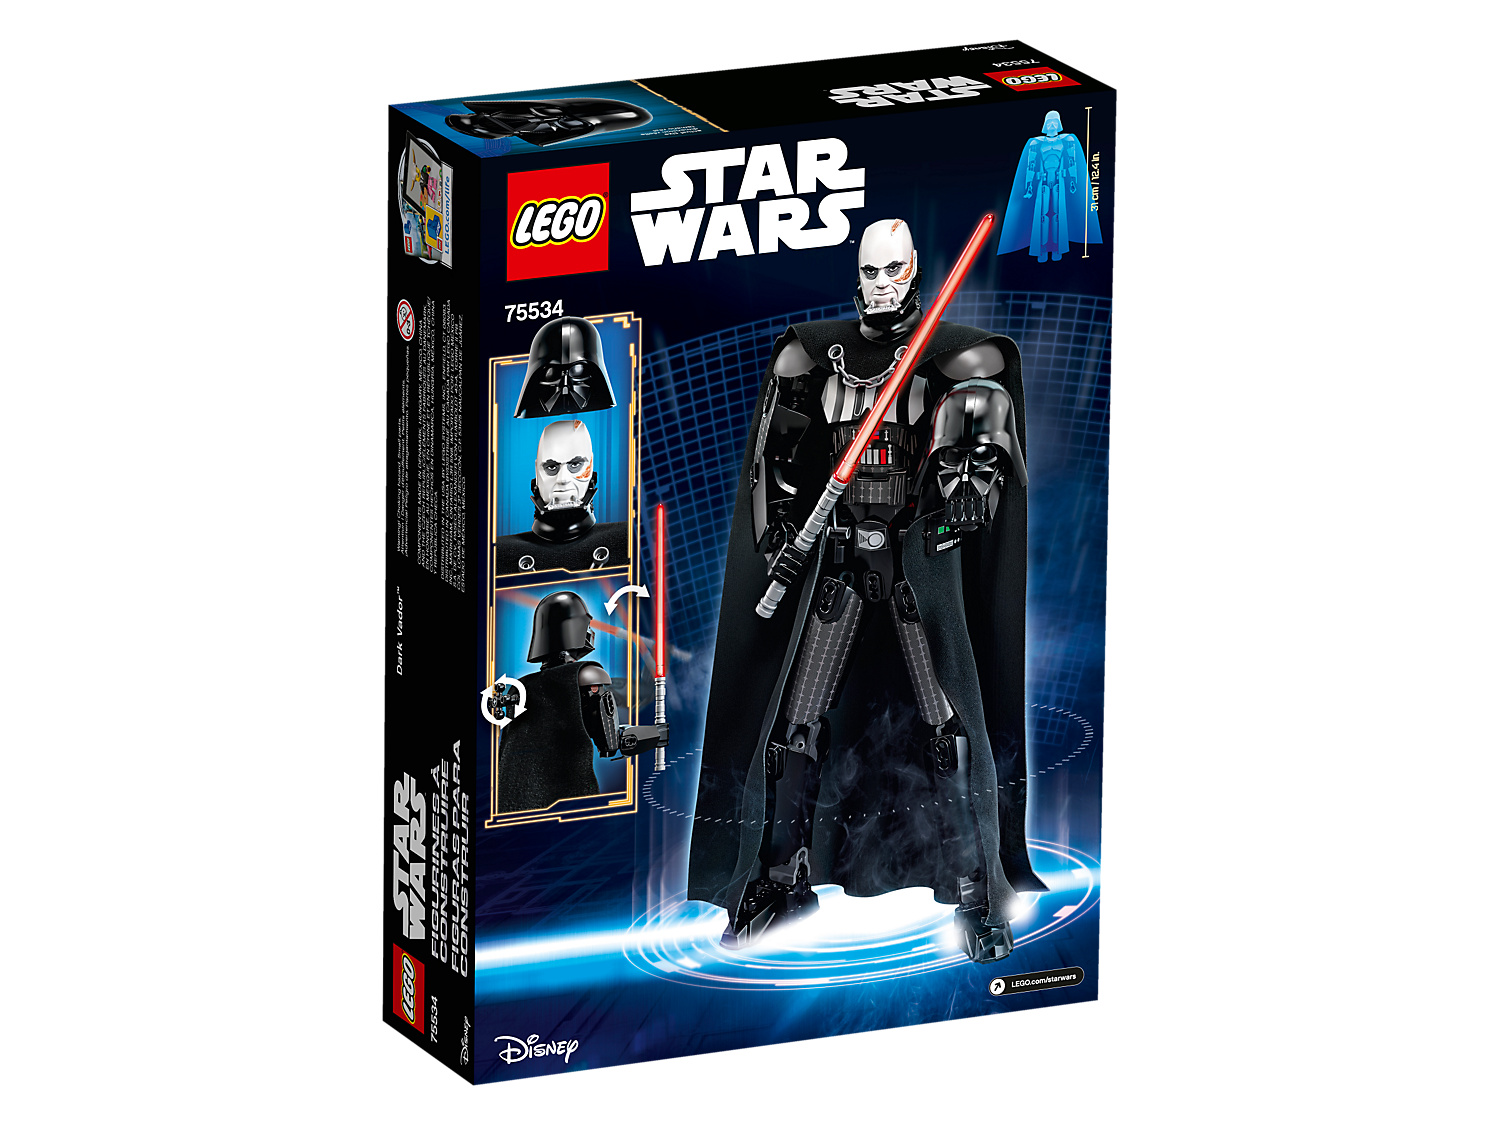 Star Wars Darth Vader LEGO Set